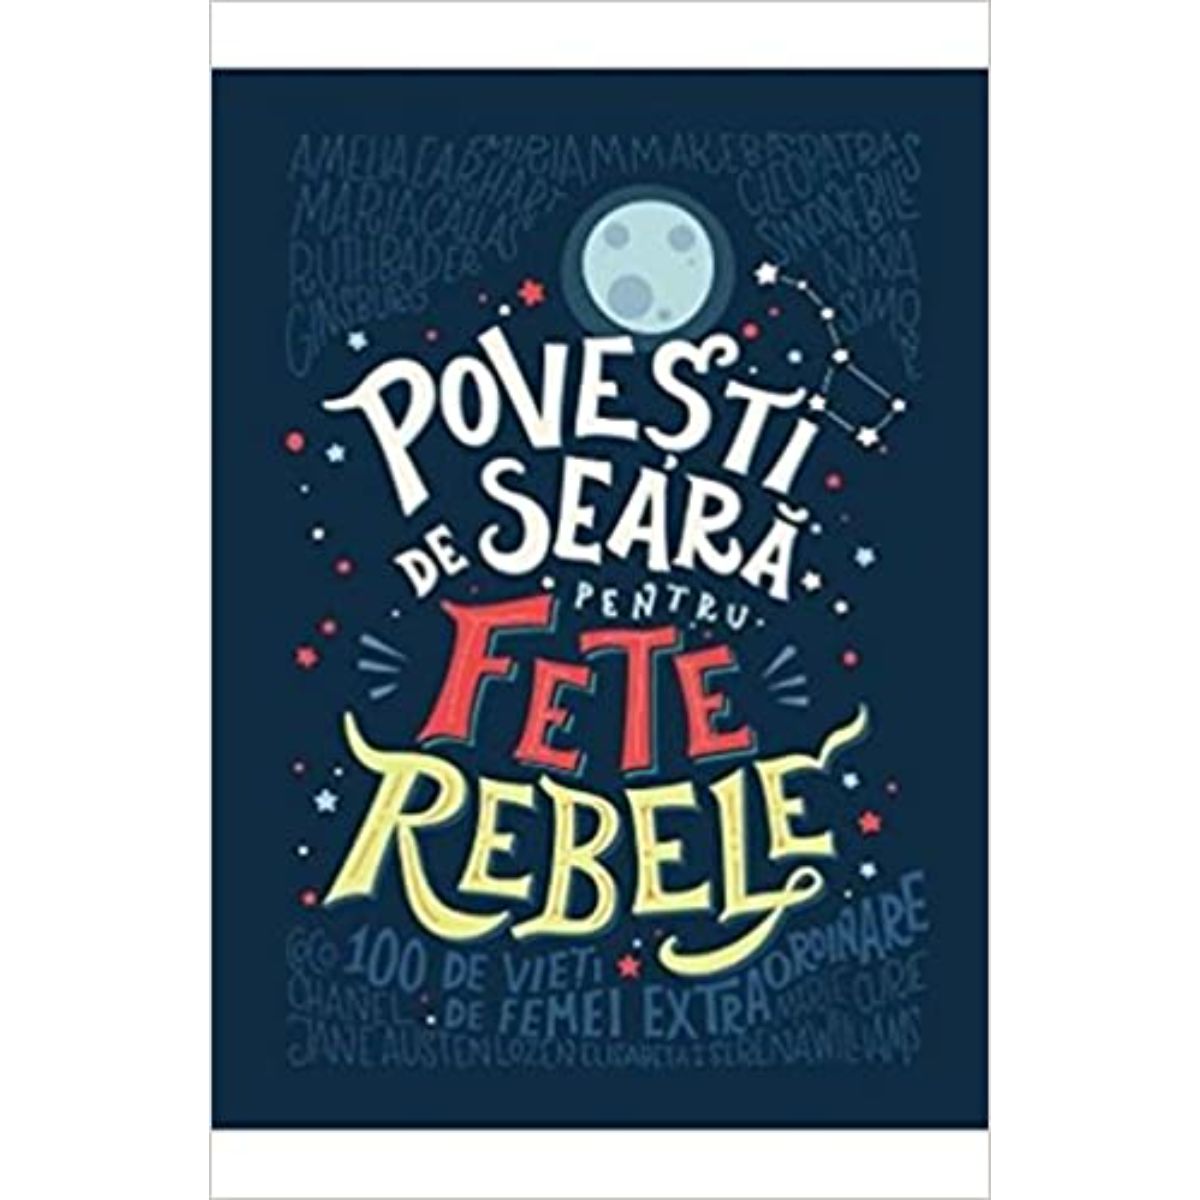 Povesti de seara pentru fete rebele, Elena Favilli, Francesca Cavallo carti imagine noua responsabilitatesociala.ro